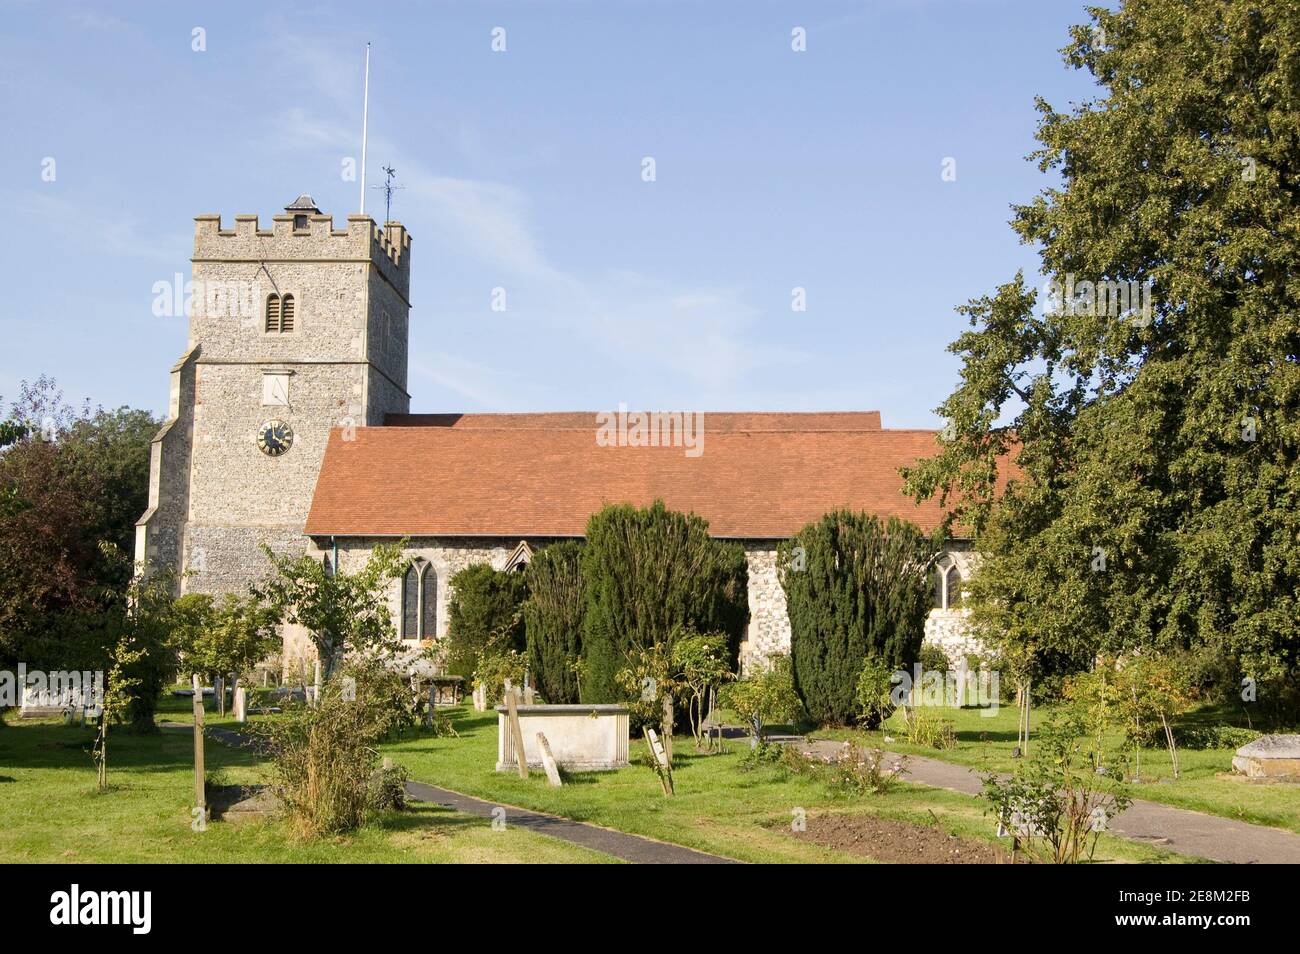 Die historische Holy Trinity Church im Dorf Cookham, Berkshire. Berühmt gemalt vom lokalen Künstler Stanley Spencer. Stockfoto